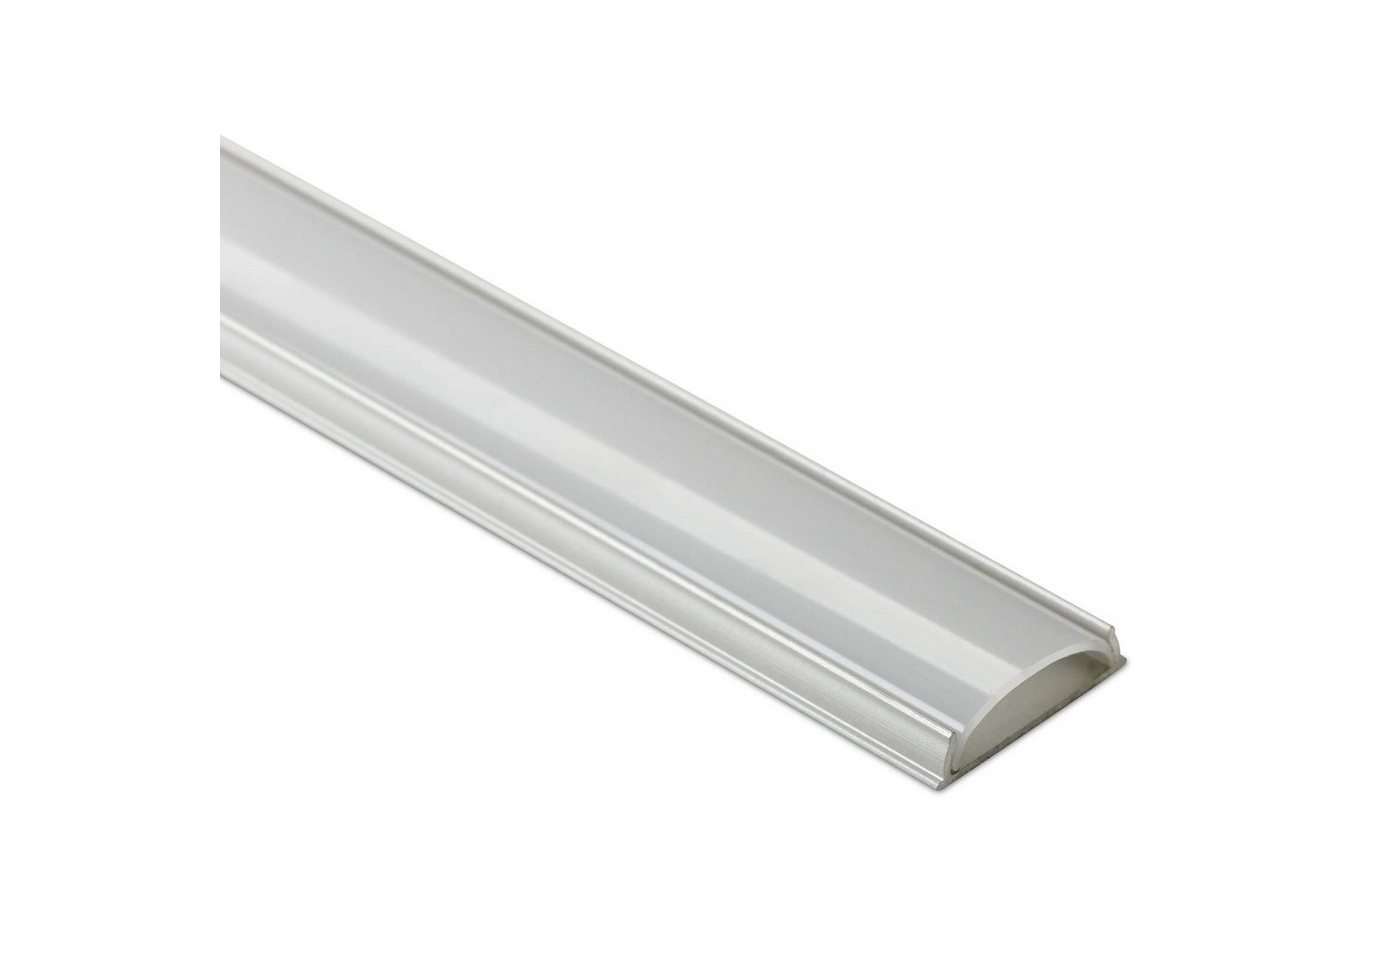 SO-TECH® LED-Stripe-Profil Biegsames LED-Aluprofil 42, Aluminium eloxiert, Abdeckung opal oder klar, versch. Ausführungen von SO-TECH®